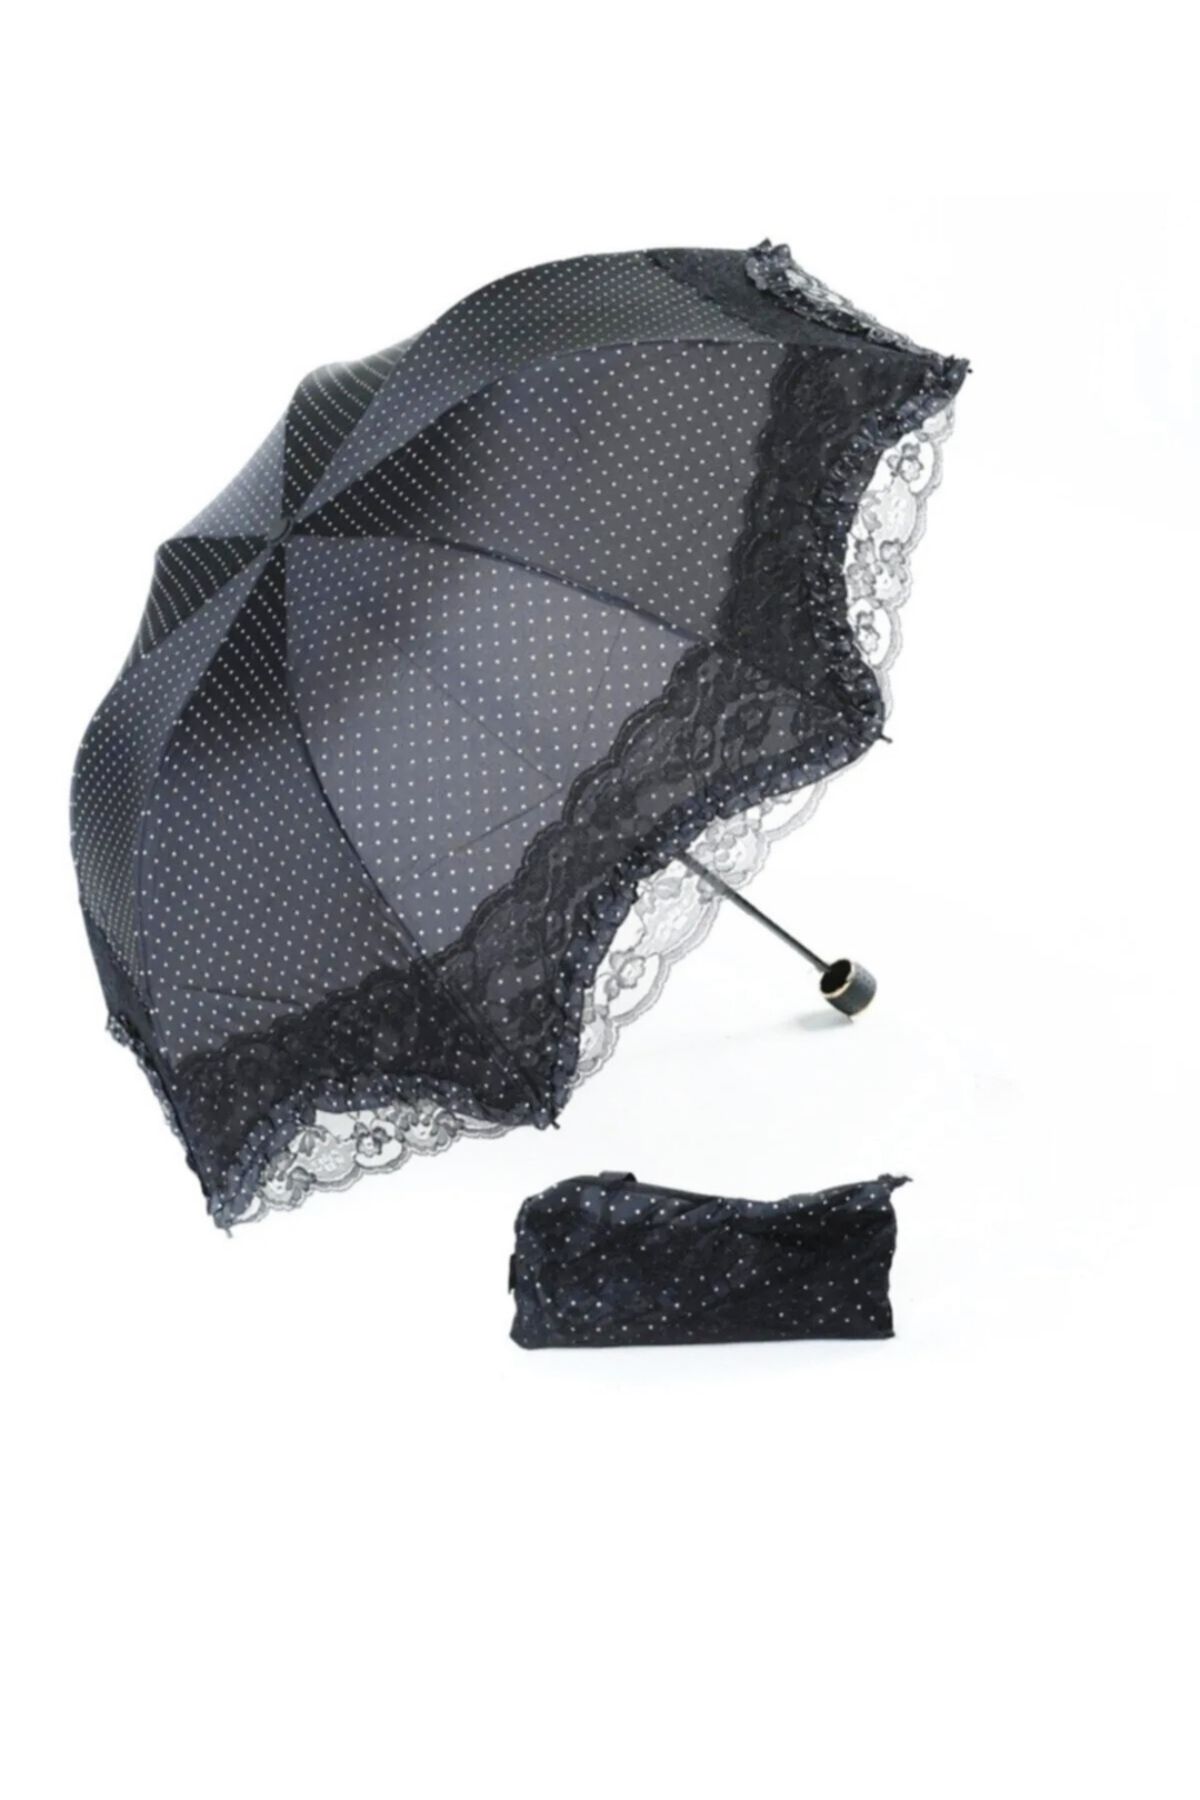 AVİPOLES Şemsiye çantalı Dantelli kırılmaz özellikli şemsiye yarasa tip katlamalı manul şemsiye